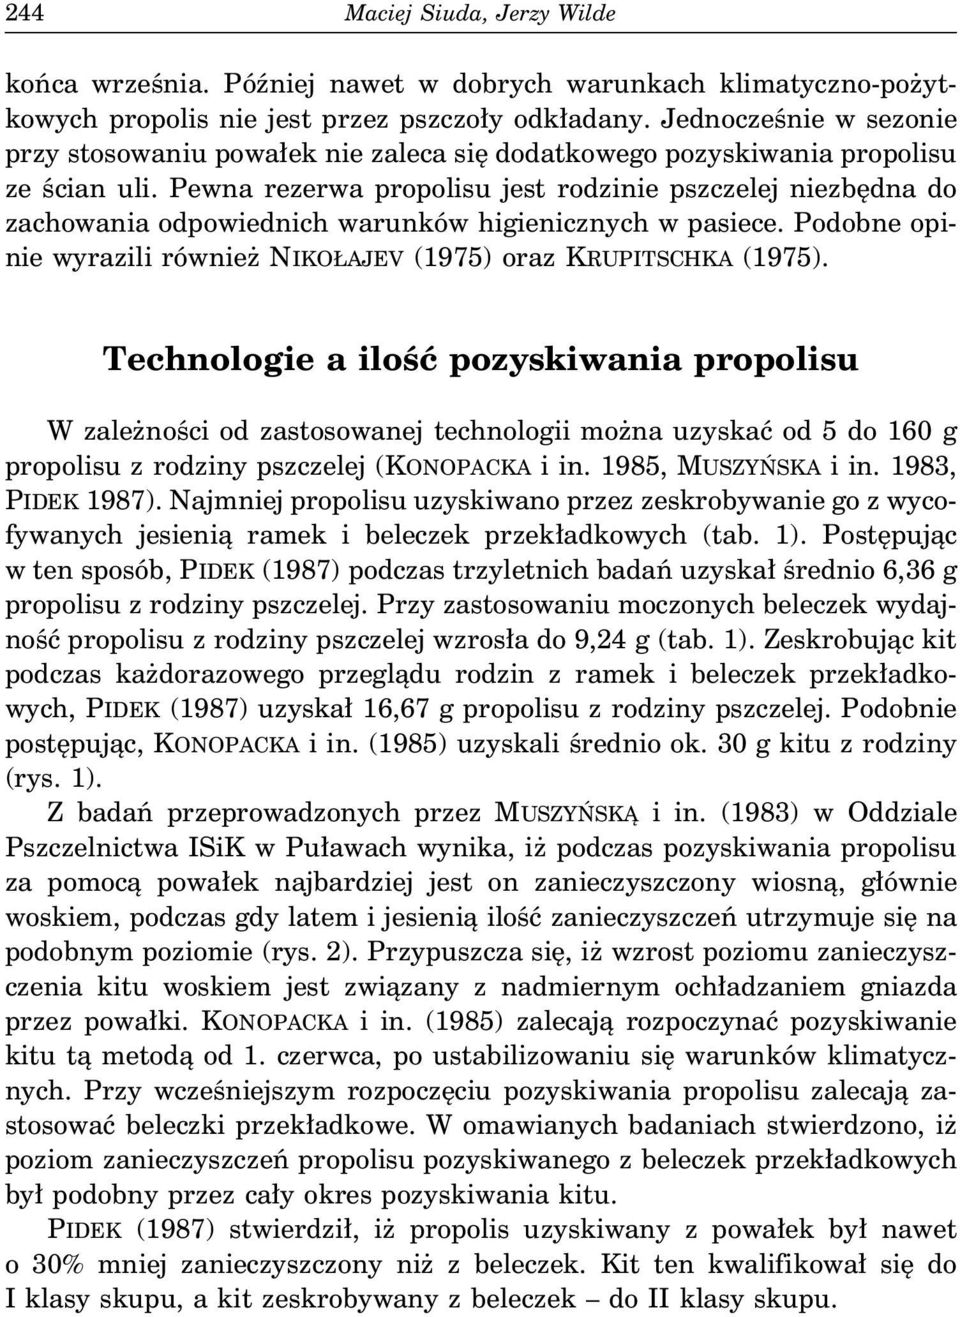 Pewna rezerwa propolisu jest rodzinie pszczelej niezbędna do zachowania odpowiednich warunków higienicznych w pasiece. Podobne opinie wyrazili również NIKOŁAJEV (1975) oraz KRUPITSCHKA (1975).